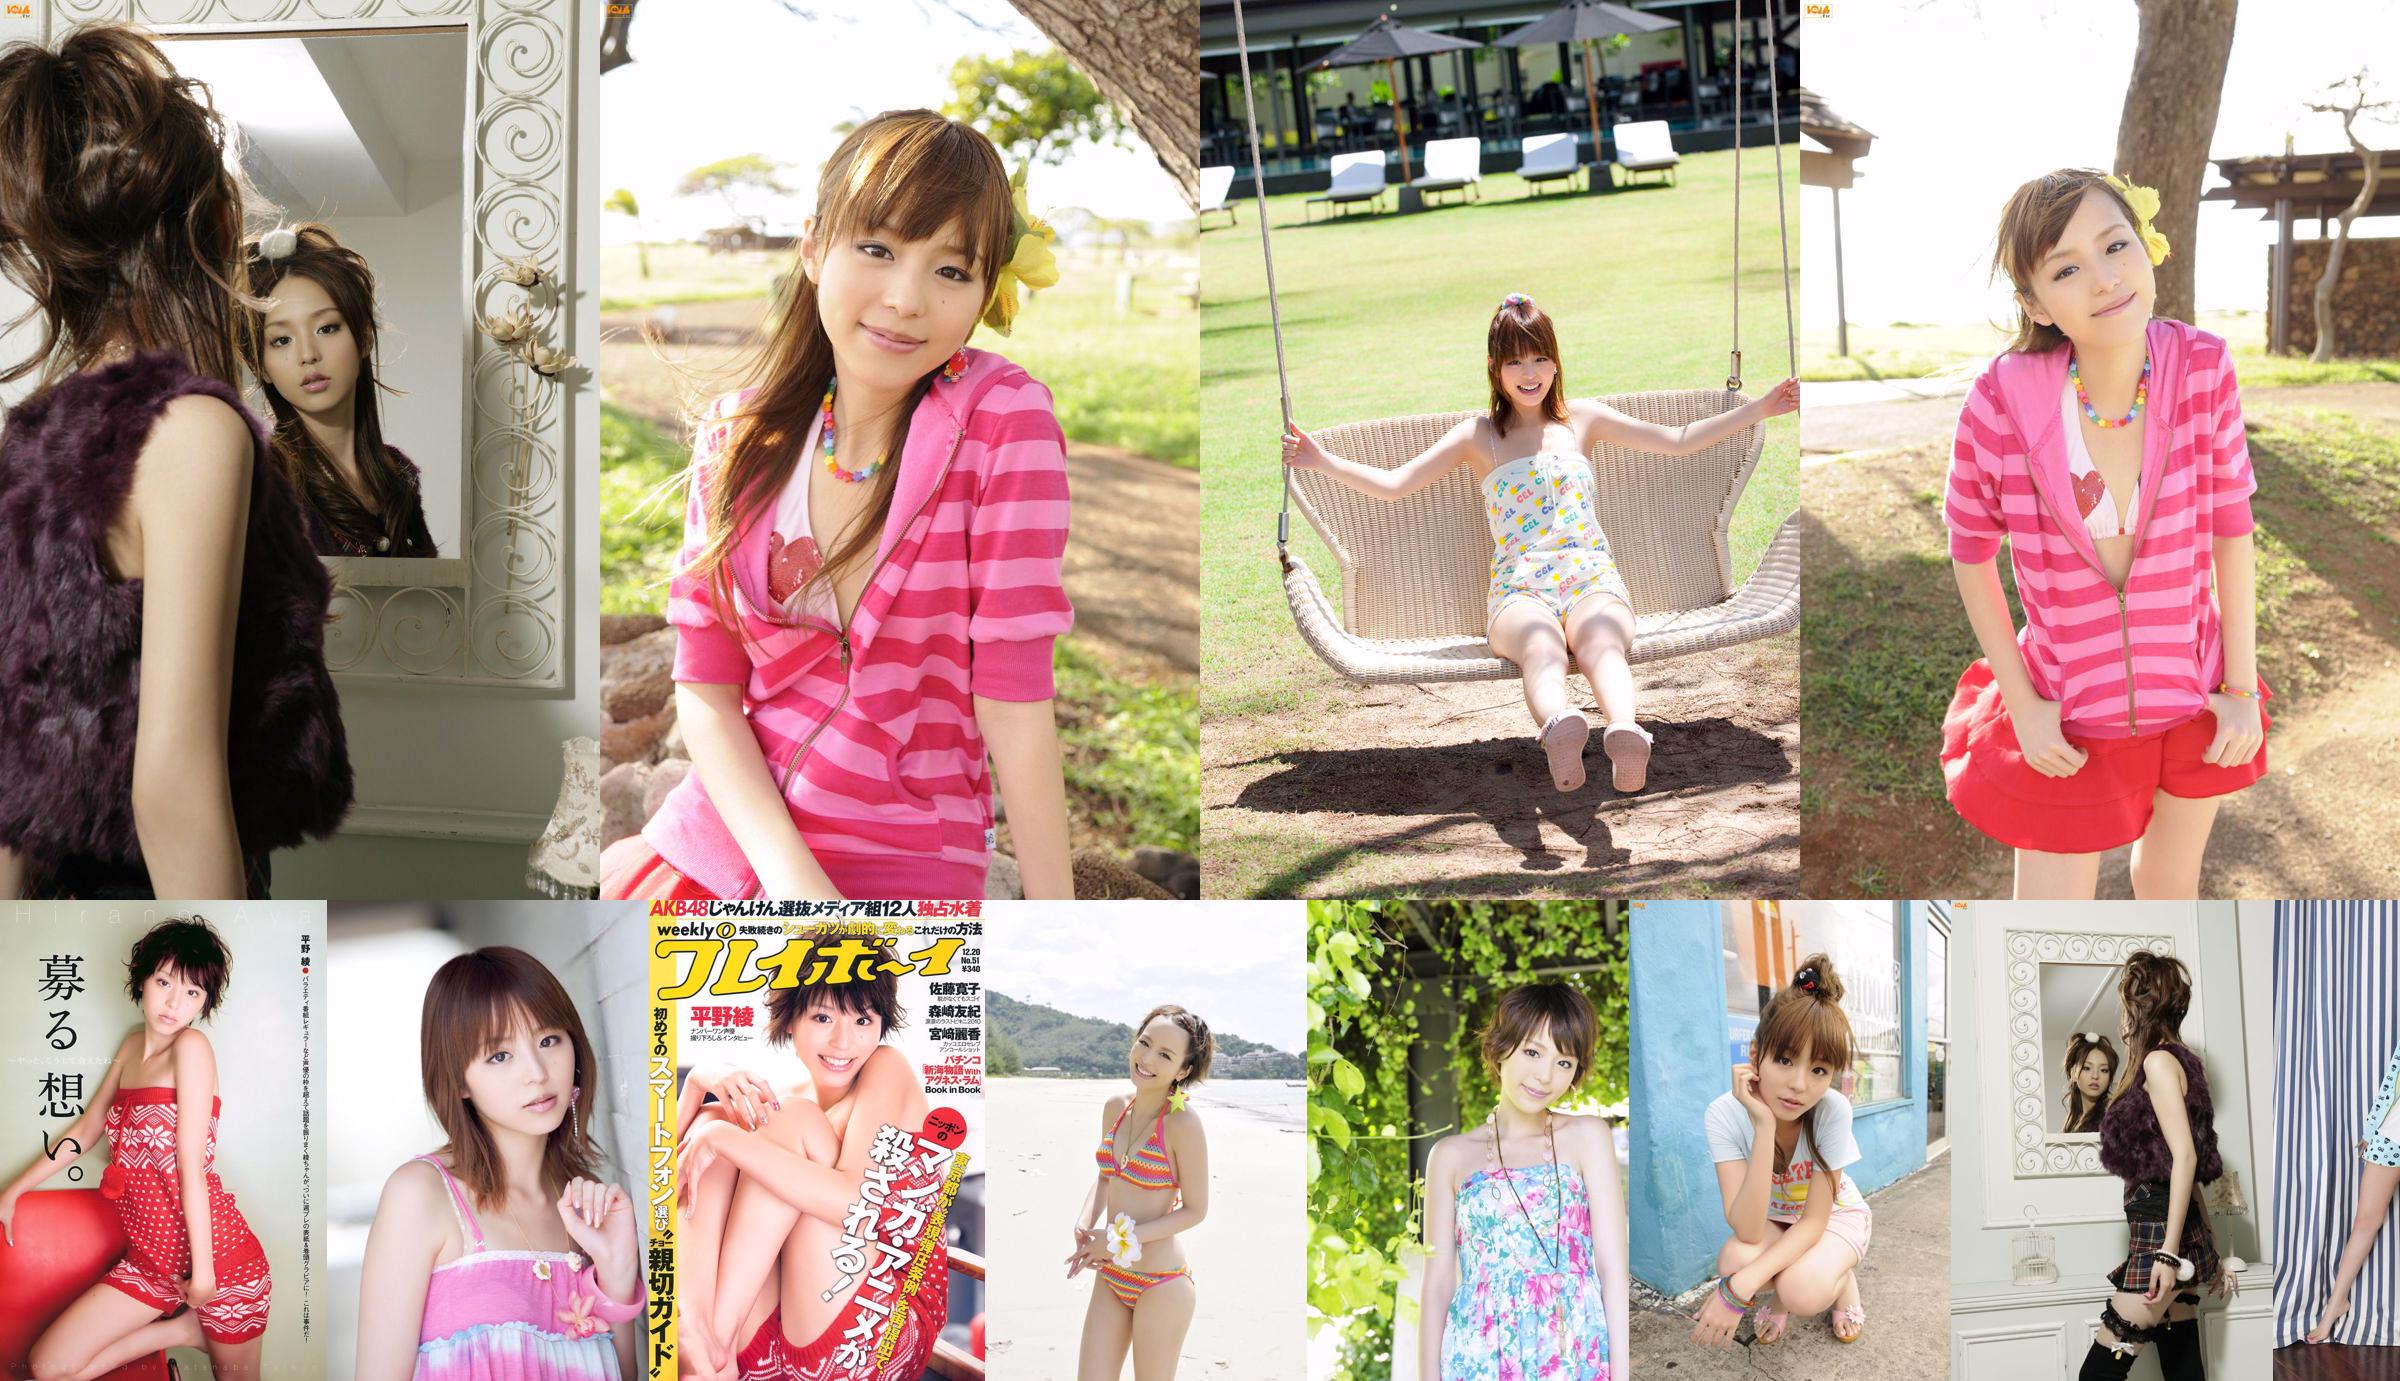 Aya Hirano AKB48 Hiroko Sato Mai Nishida Yuki Morisaki Agnes Lum [Weekly Playboy] 2010 Majalah Foto No. 51 No.3e358b Halaman 5